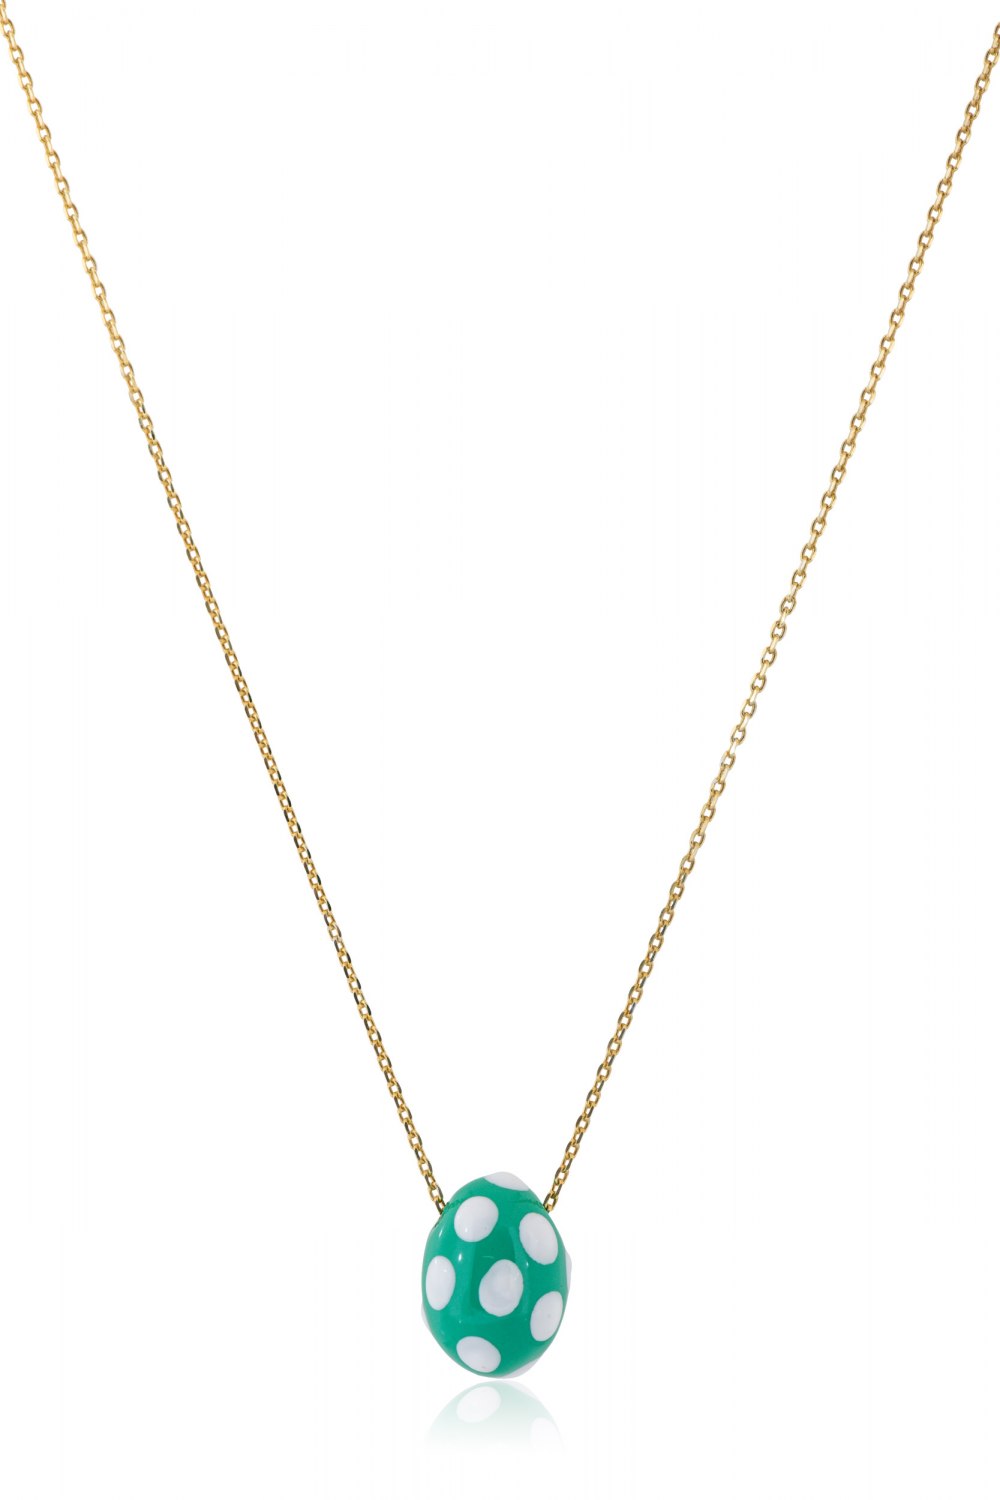 KESSARIS - Green Polka-Dot Easter Egg Pendant Necklace